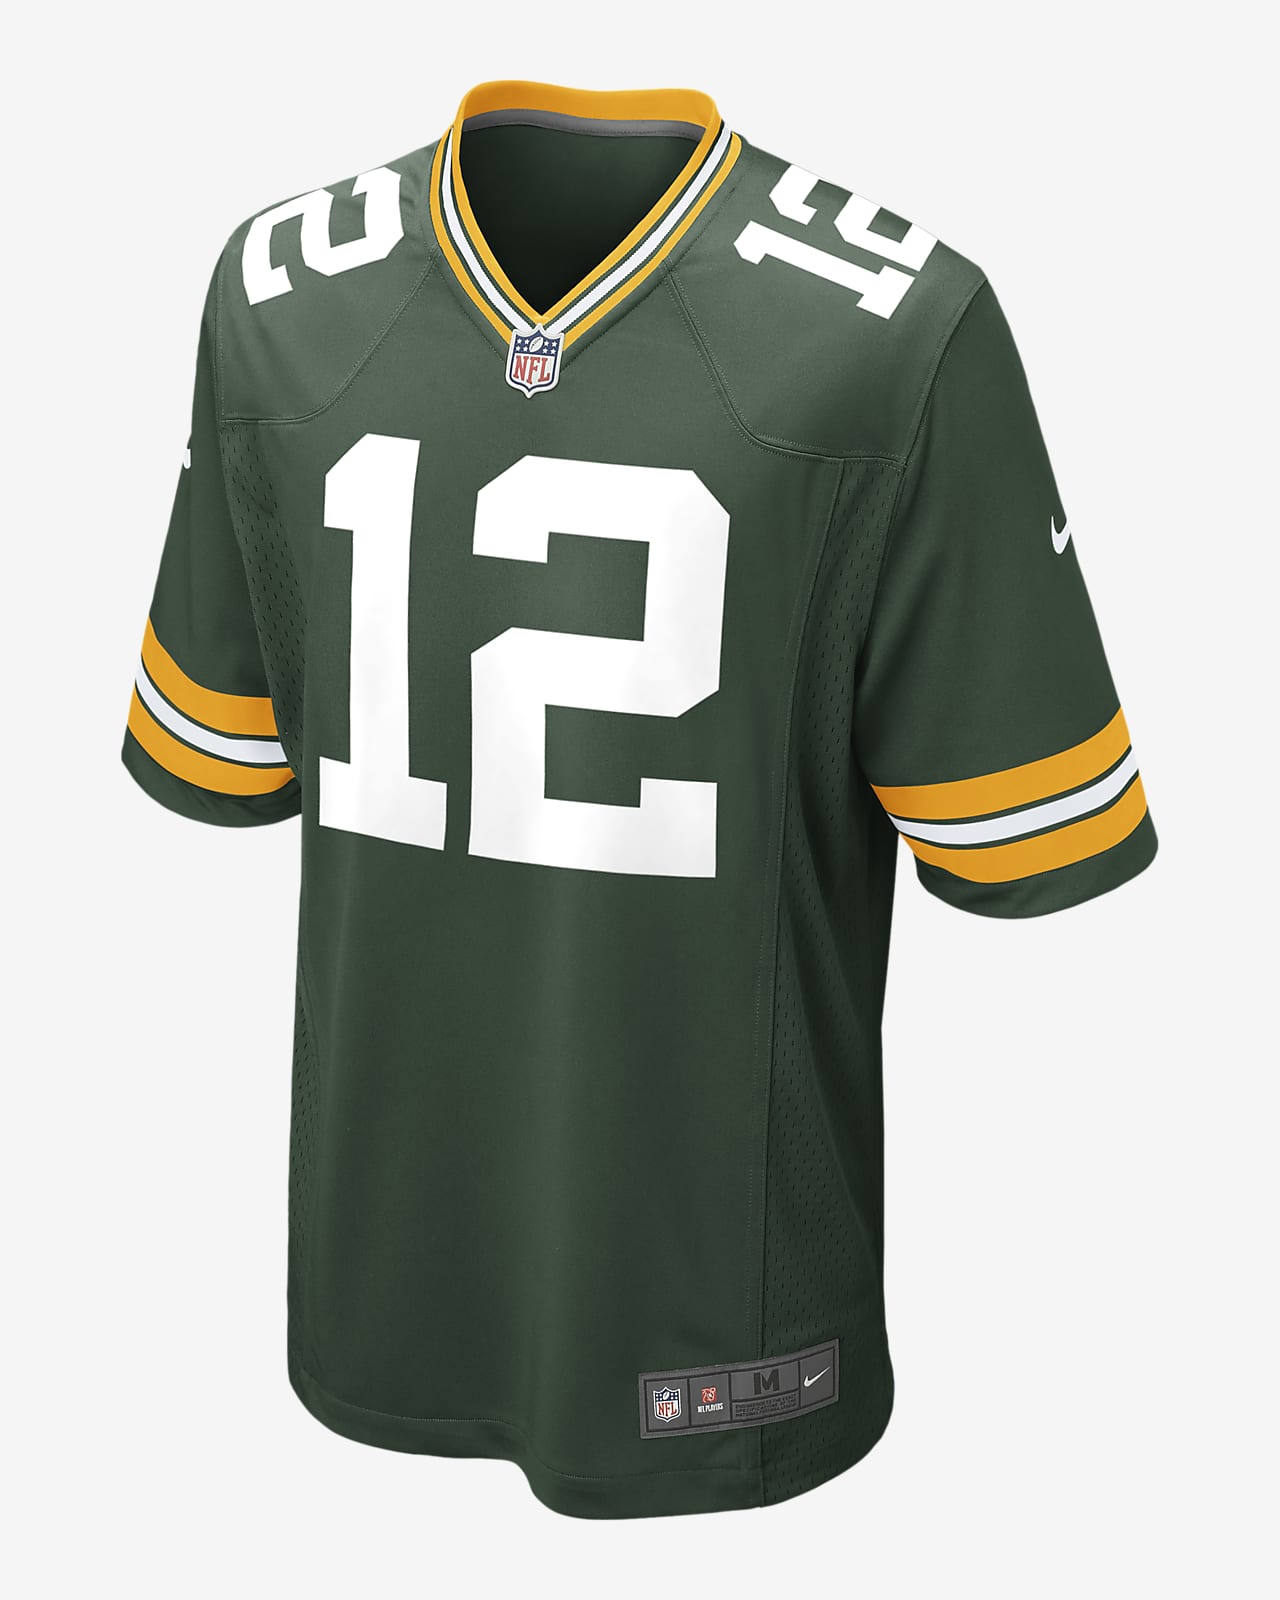 NFL Green Bay Packers (Aaron Rodgers) American-football-wedstrijdjersey voor heren